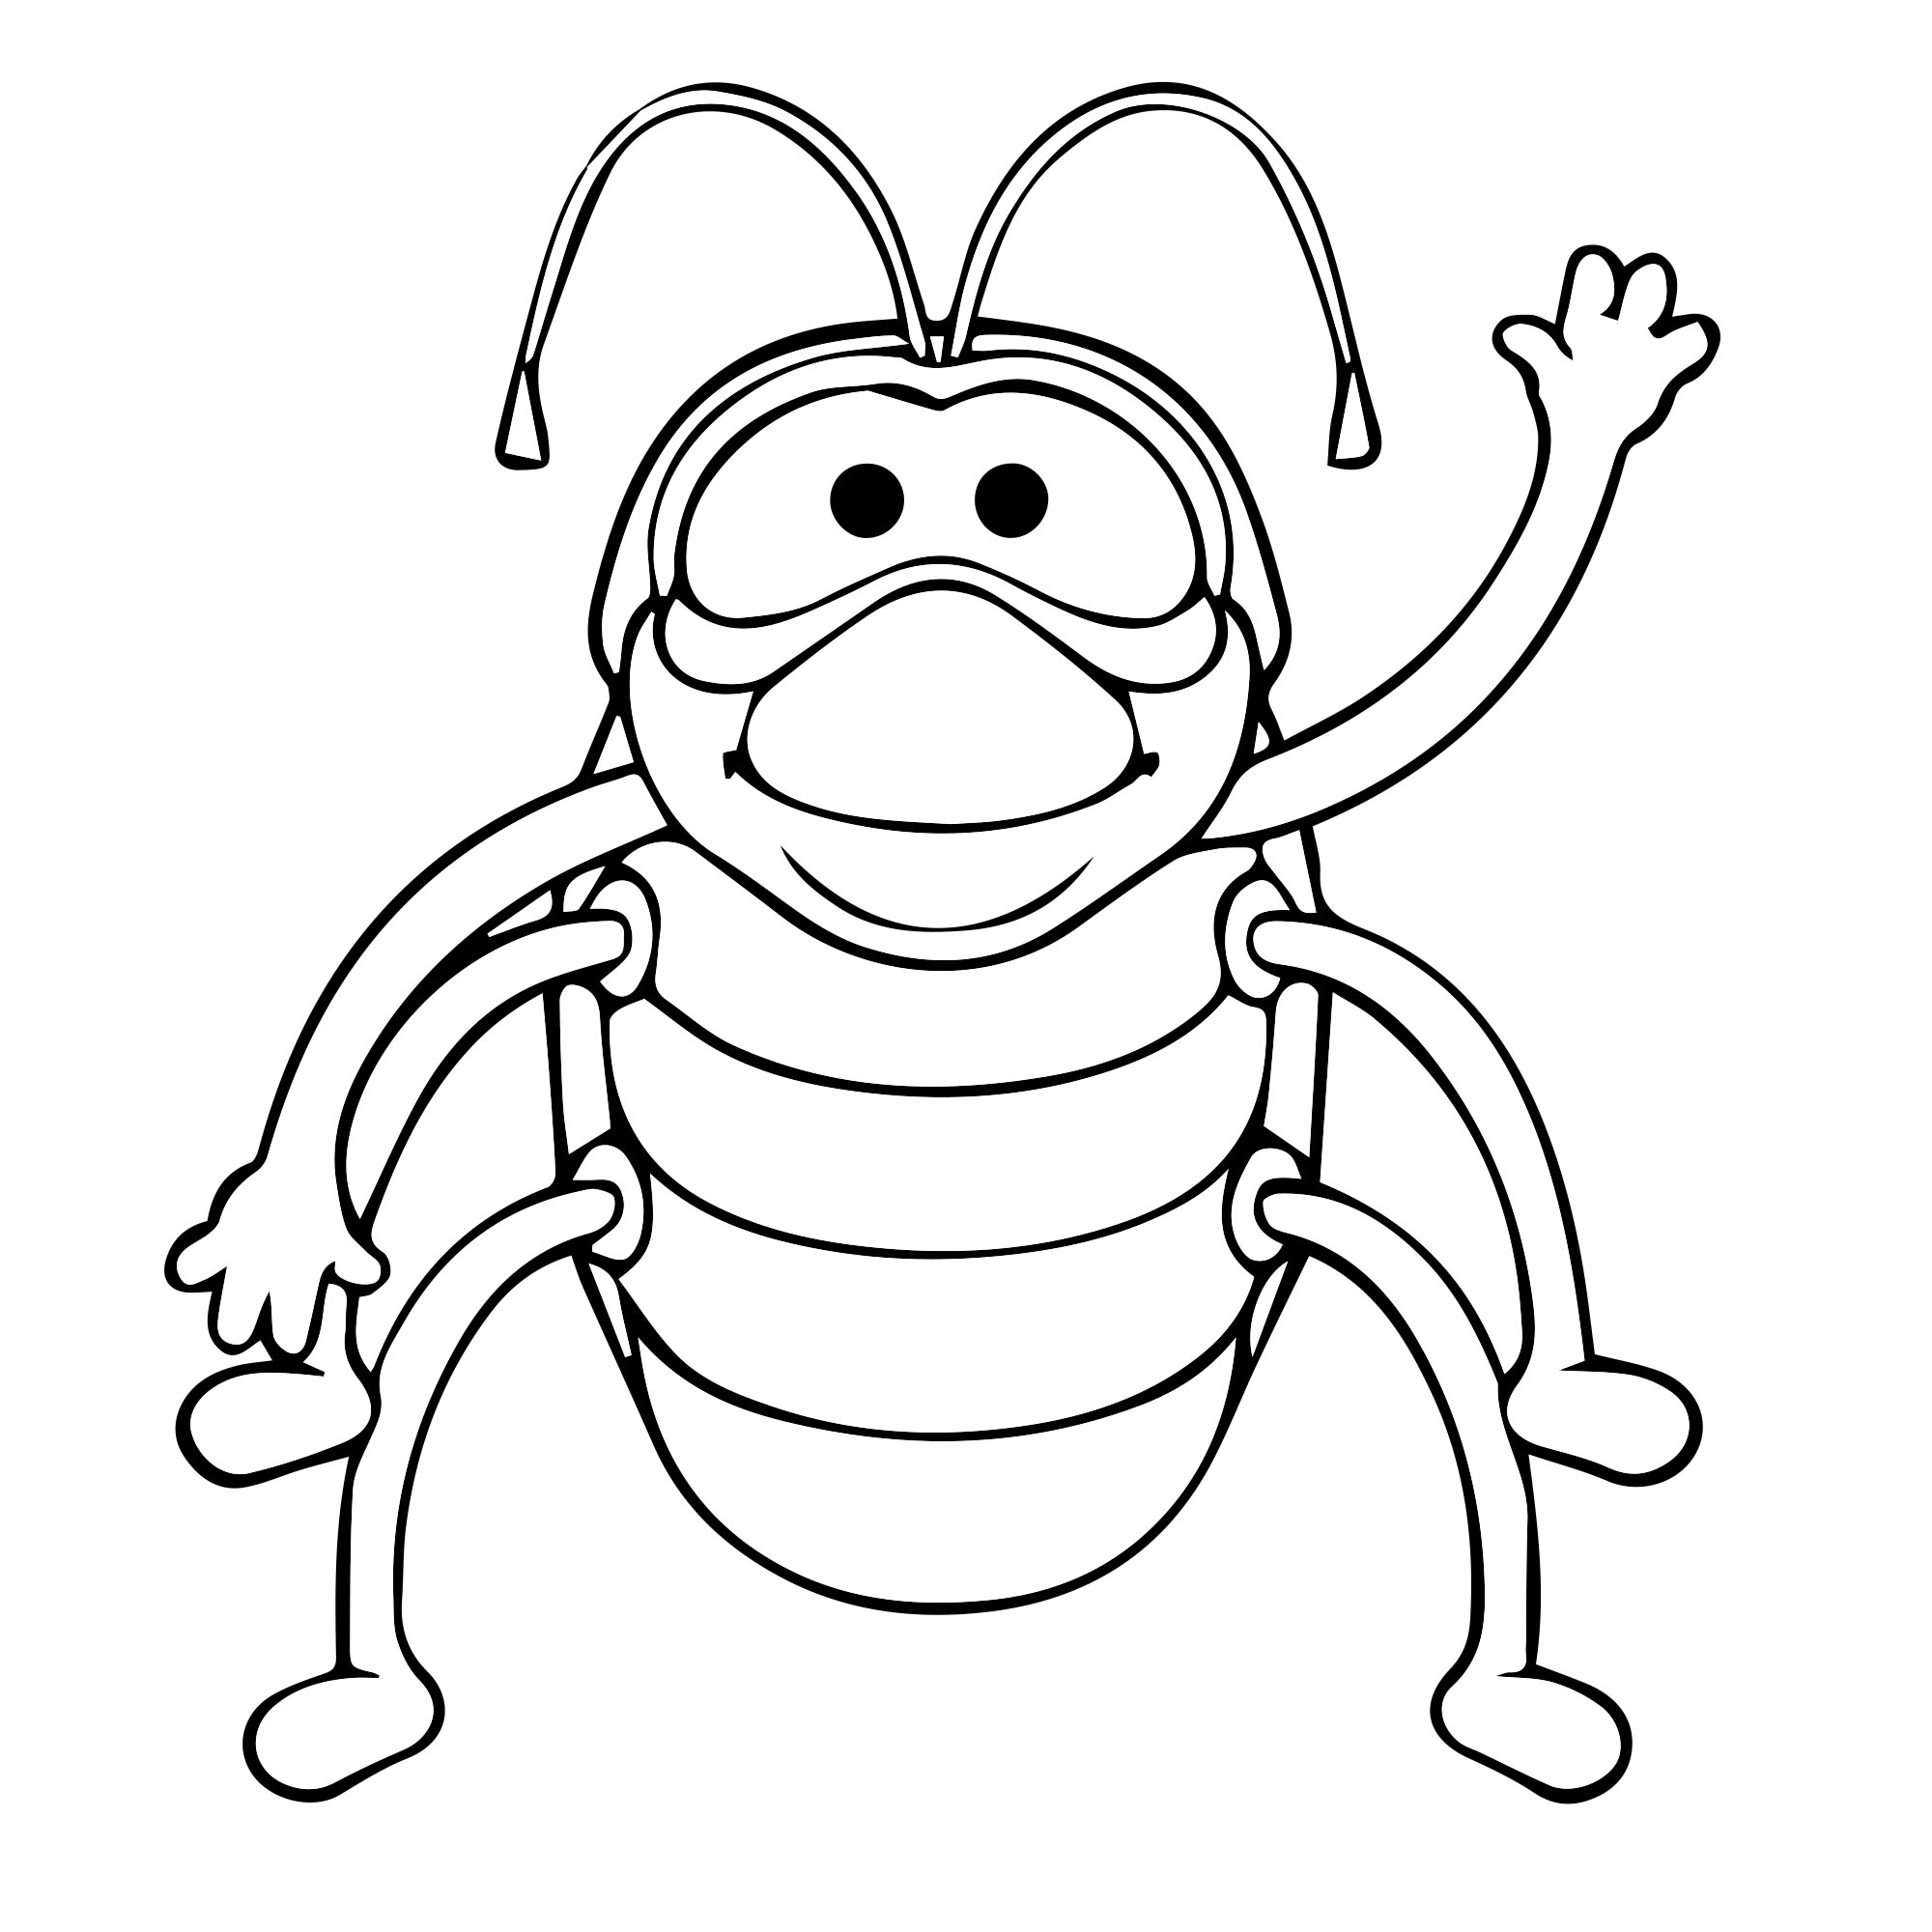 Приветливый жук раскраска для детей